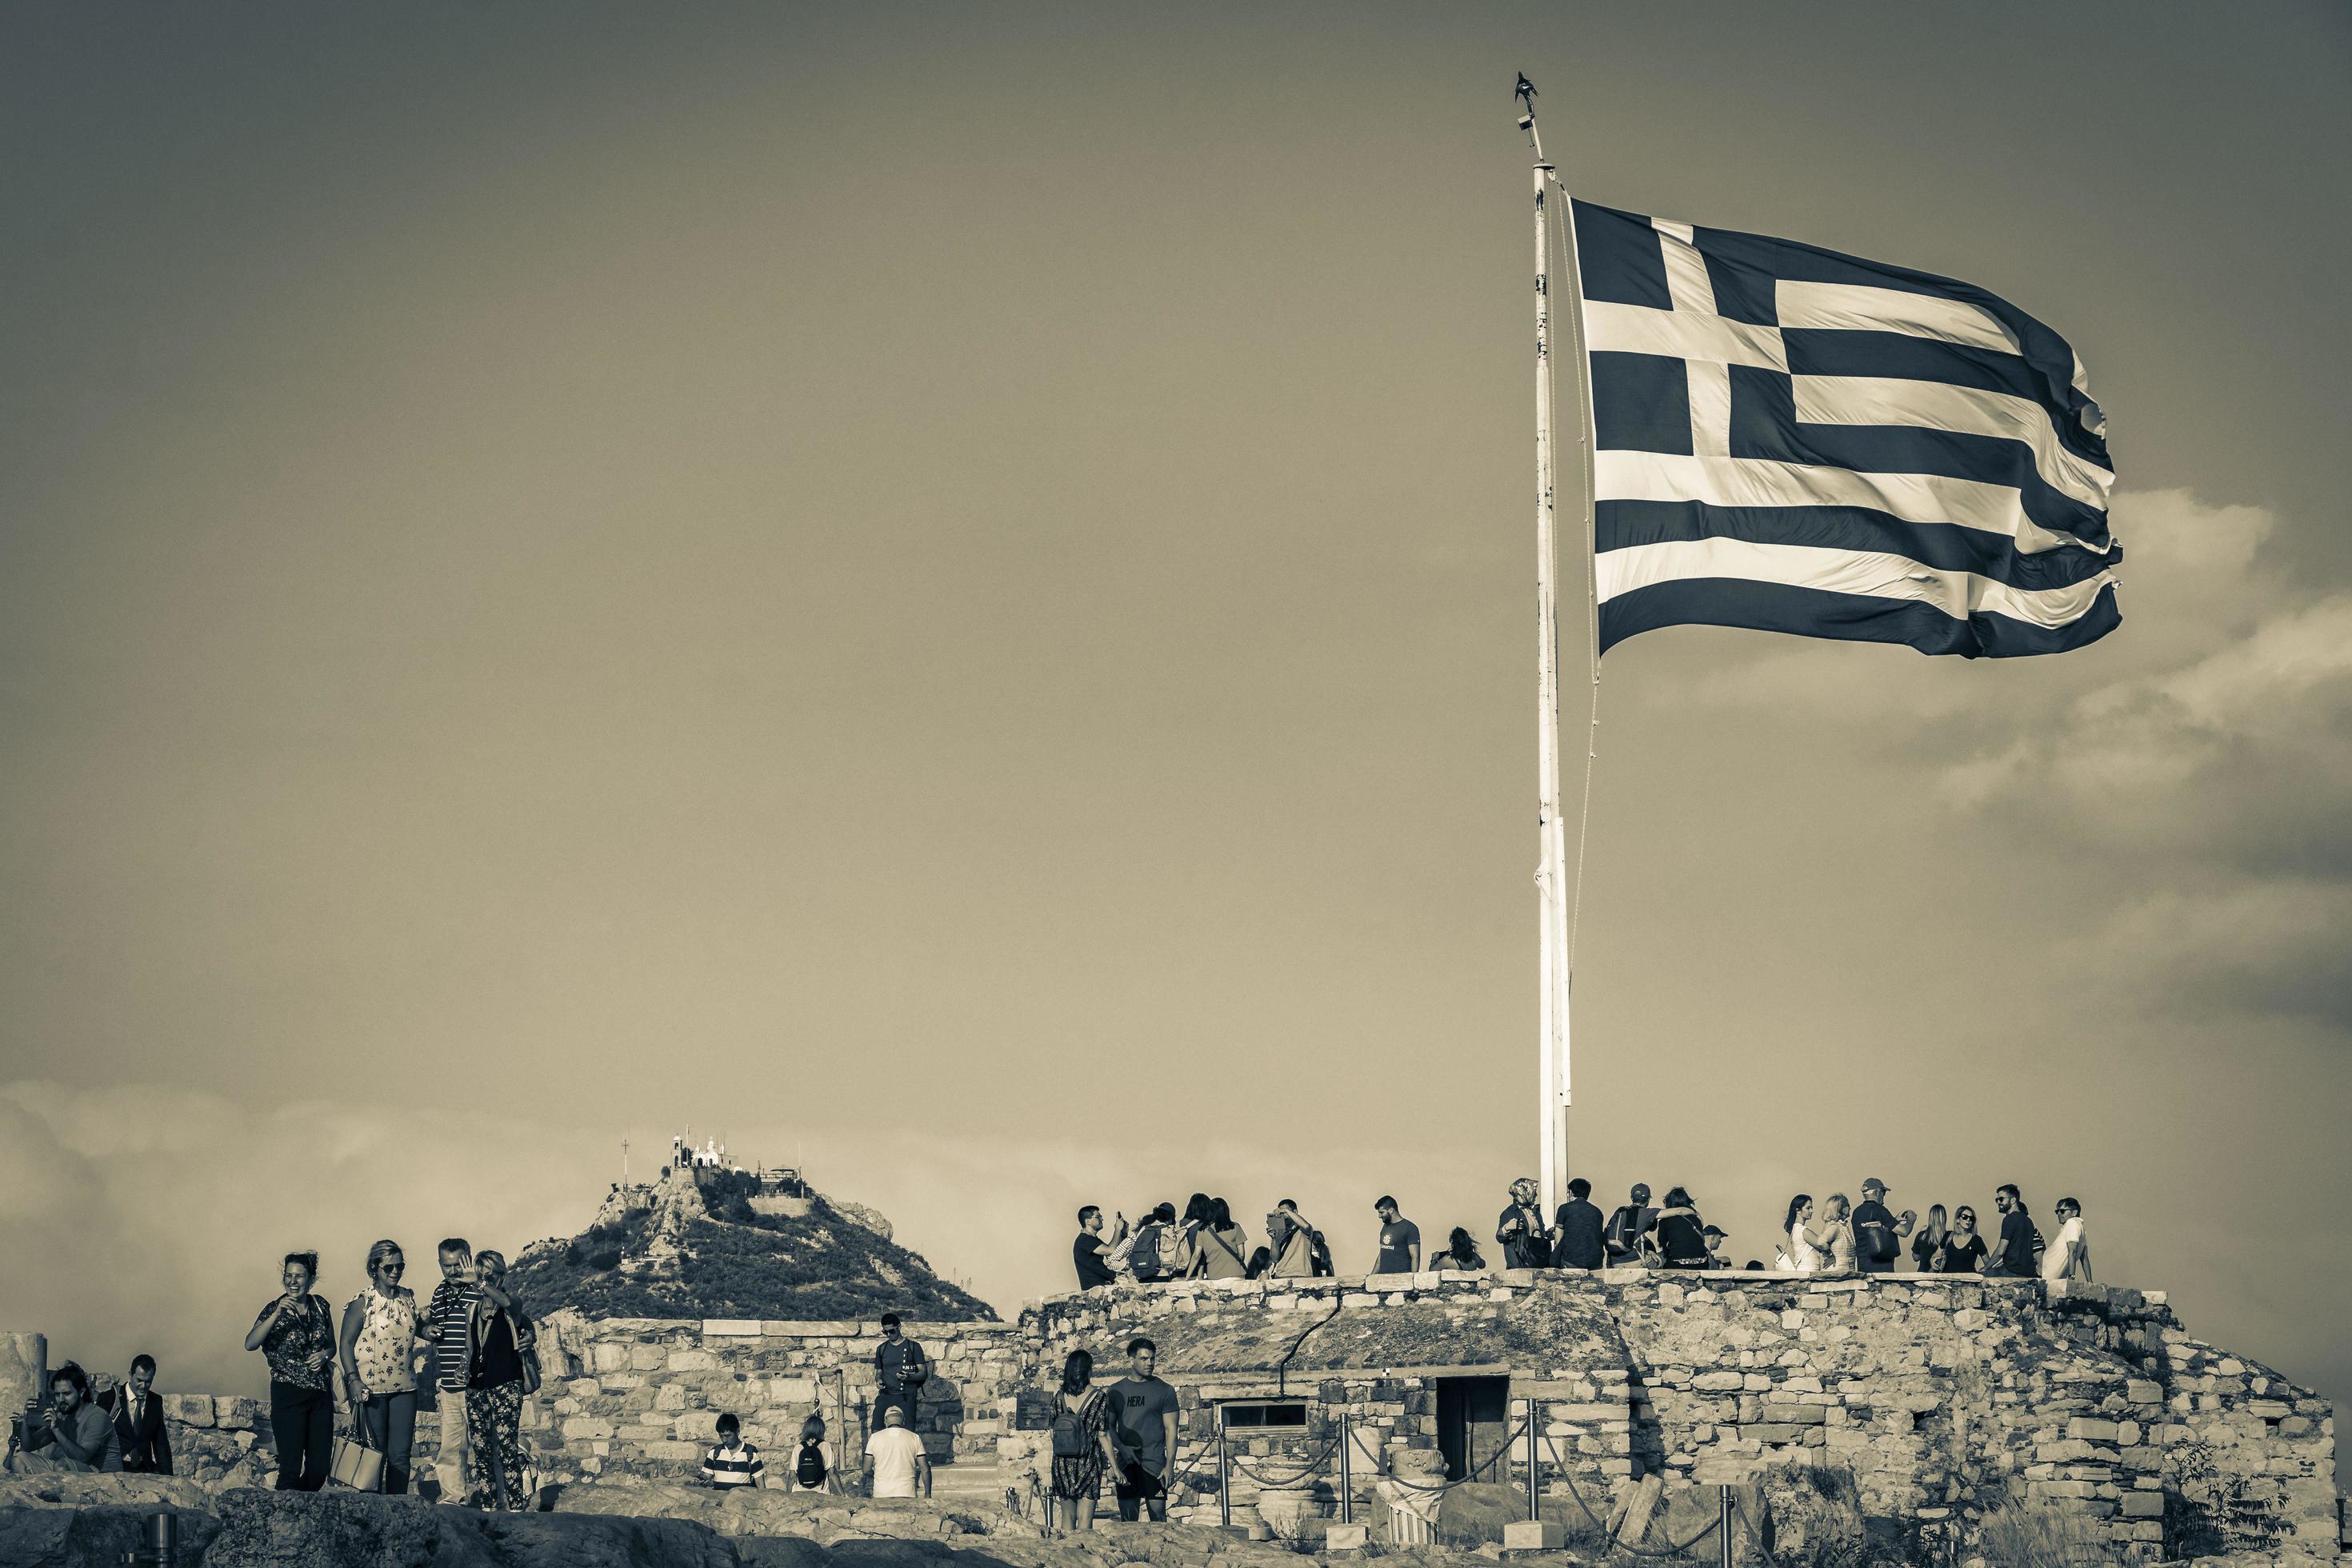 athènes grèce 04. octobre 2018 drapeau blanc bleu grec avec ruines acropole d'athènes grèce. photo